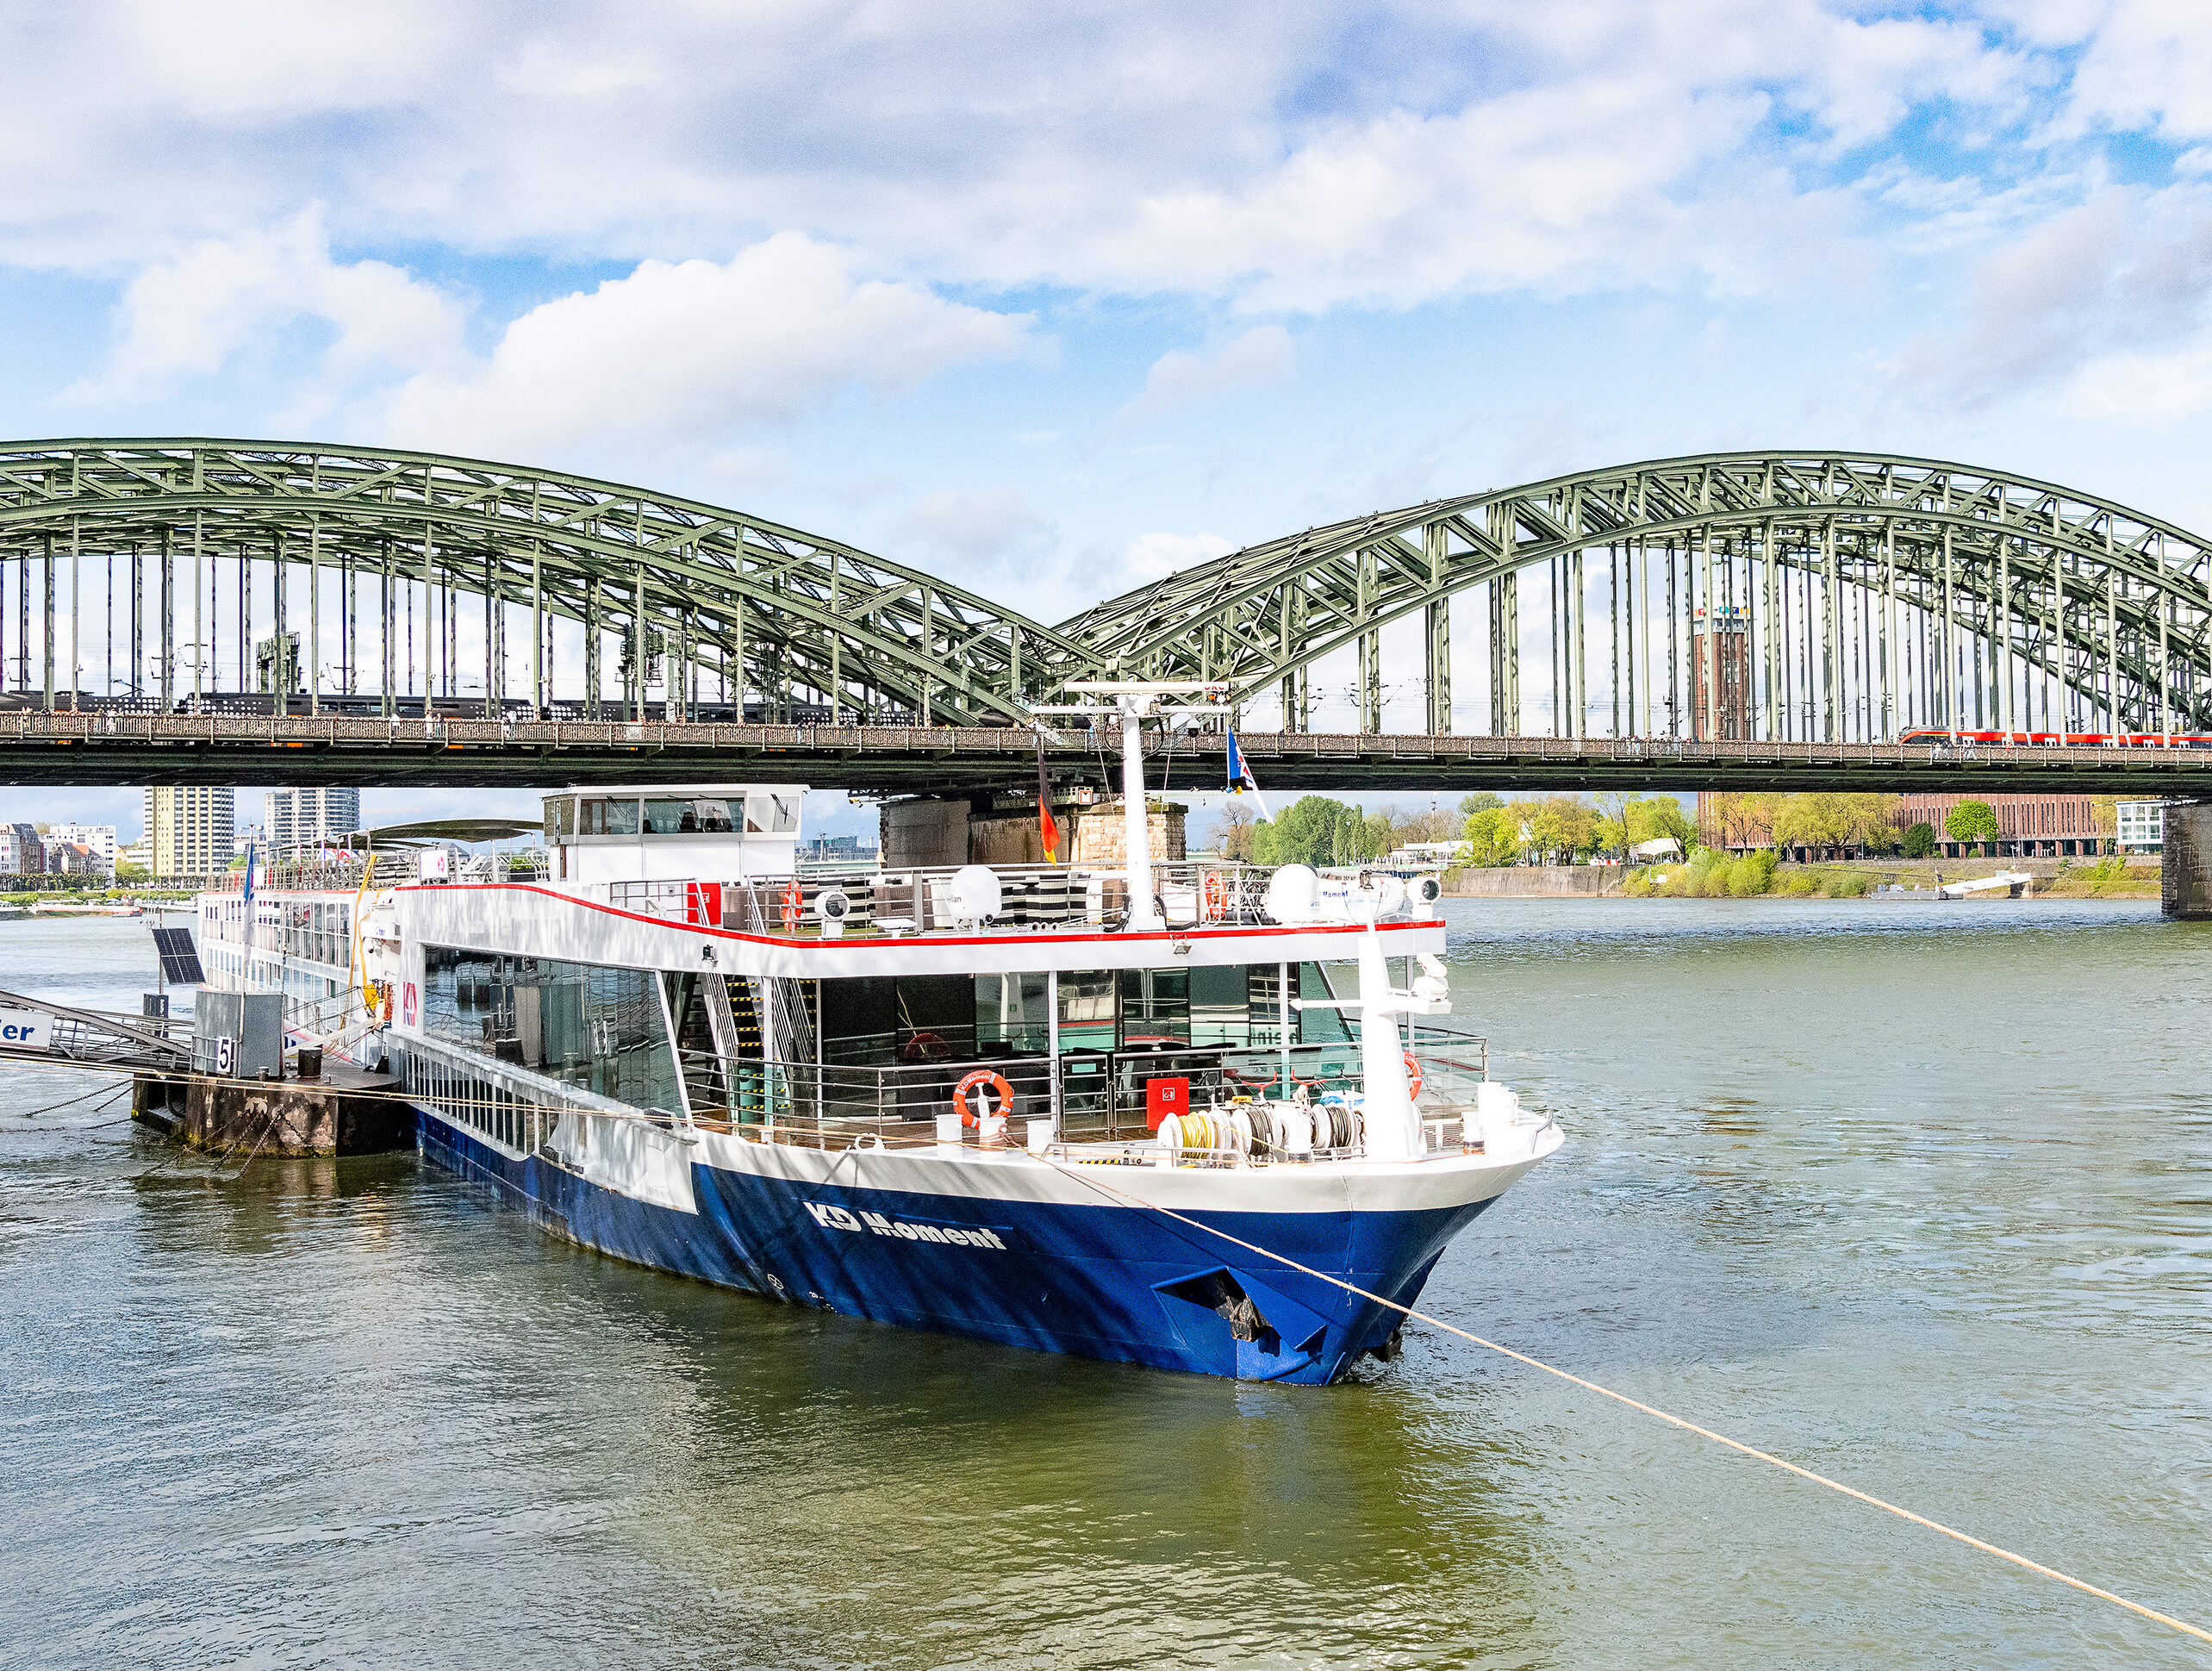 Das Hotelschiff "KD Moment" ankert auf dem Rhein in Köln.